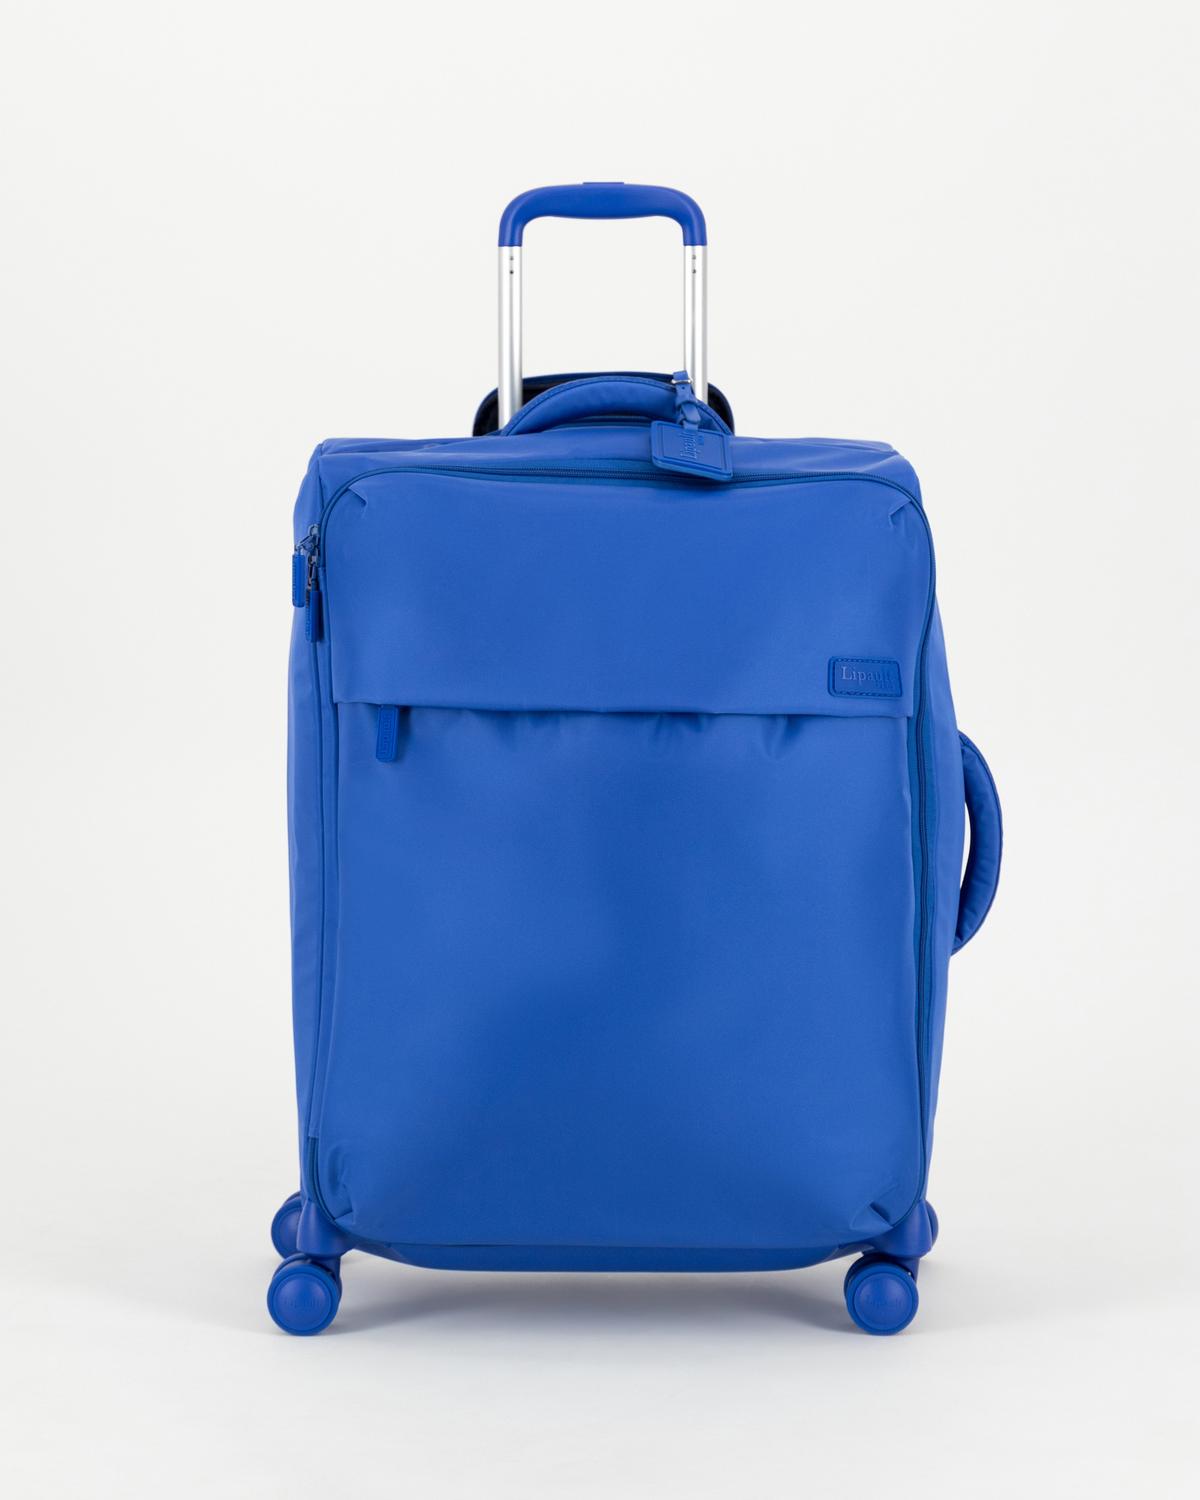 Lipault Plume Medium Trip Luggage Bag -  cobalt